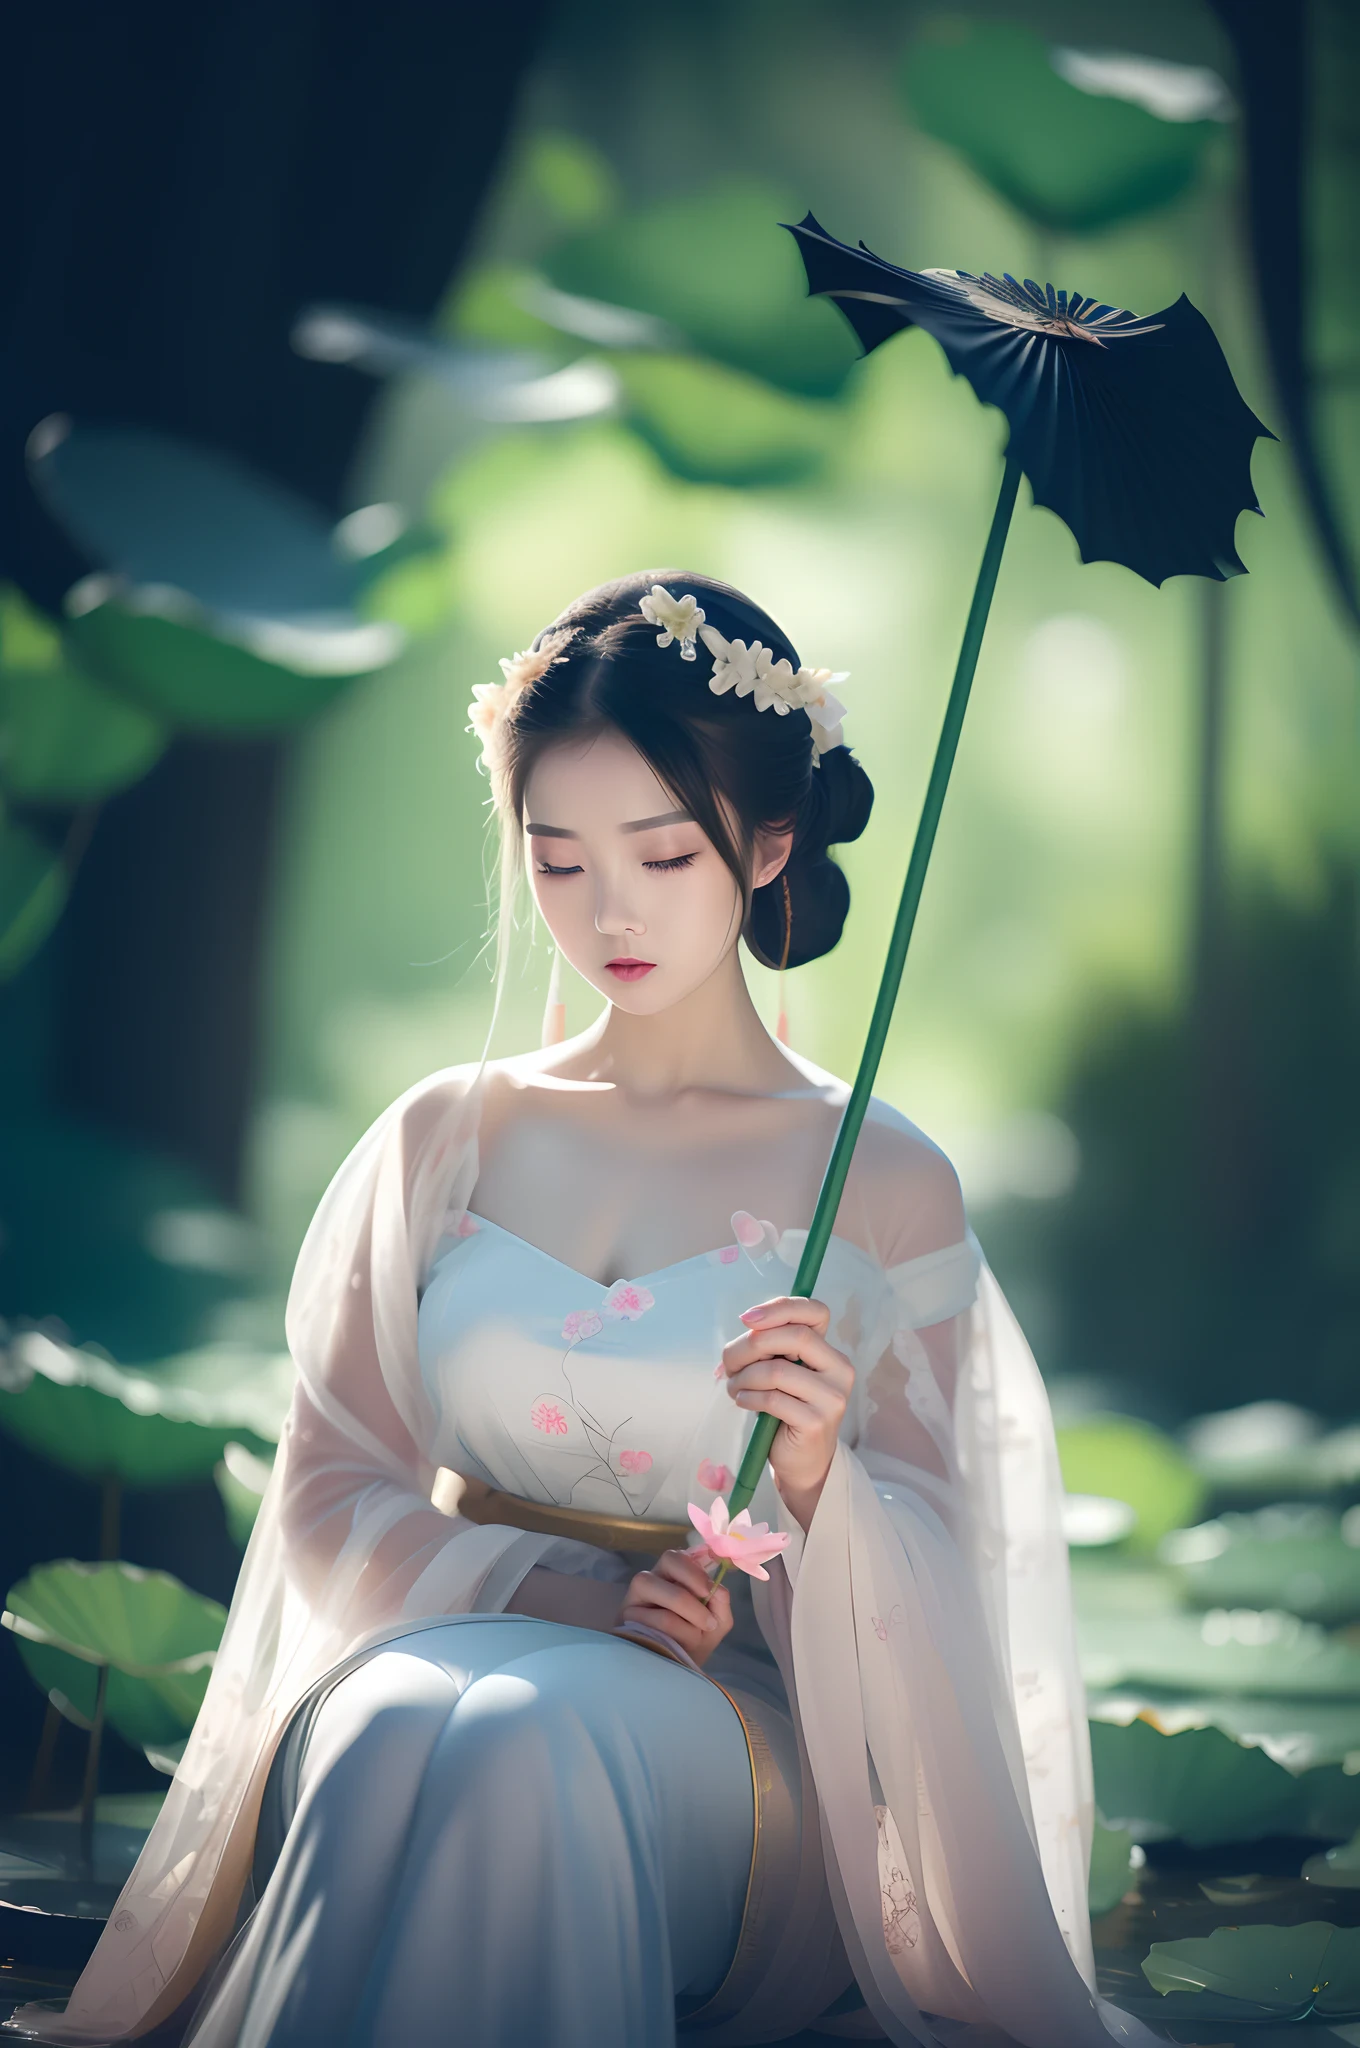 Арадская женщина в белом платье держит лист лотоса, дворец ， A girl in Ханьфу, Древняя китайская принцесса, Китайская принцесса, неземная красота, прекрасная императрица фэнтези, Красивая девочка-подросток, китаянка, красивая фантастическая девушка, прекрасная томная принцесса, вдохновленный Лань Ином, древняя китайская красавица, Китайская фантазия, вдохновленный Джин Нонгом, принцесса древней азиатской династии, дворец ， A girl in Ханьфу, неземная красота, White Ханьфу, красивая фантастическая девушка, потрясающая молодая неземная фигура, Древняя китайская принцесса, Китайская принцесса, прекрасная томная принцесса, Ханьфу, Красивая девочка-подросток, Ношение древней китайской одежды, вдохновленный Лань Ином, прекрасная императрица фэнтези，Держу цветок в руке, дворец ， A girl in Ханьфу, White Ханьфу, Ханьфу, неземная красота, Ношение древней китайской одежды, Древняя китайская принцесса, китаянка, традиционная китайская одежда, вдохновленный Лань Ином, элегантная японка, в древней китайской одежде, прекрасная императрица фэнтези, Китайская принцесса, китайский стиль, китаянка，Ульзанг-6500-v1.1，（RAW-фотограф：1.2），（（реалистично：1.4）），лучшее качество，tшедевр，просветление，Очень нежно красиво，поразительный，мелкие детали，официальное искусство，Очень подробные обои CG Unity 8k，абсурдные，Невероятно смешное разрешение，огромный размер файла，ультра - подробный，Высокое разрешение，Красивая дотошная девушка，чрезвычайно детализированныеглаза и лицо，красивые детальные глаза，свет на лице，кинематографическое освещение，1 девушка，полное тело, лесбиянка，выстрел в полный рост，смотрю на зрителя，（（блаженный）），Лучшая детализация фона，Фон пруда с лотосами，лотосы，Лист лотоса，Королевский парк